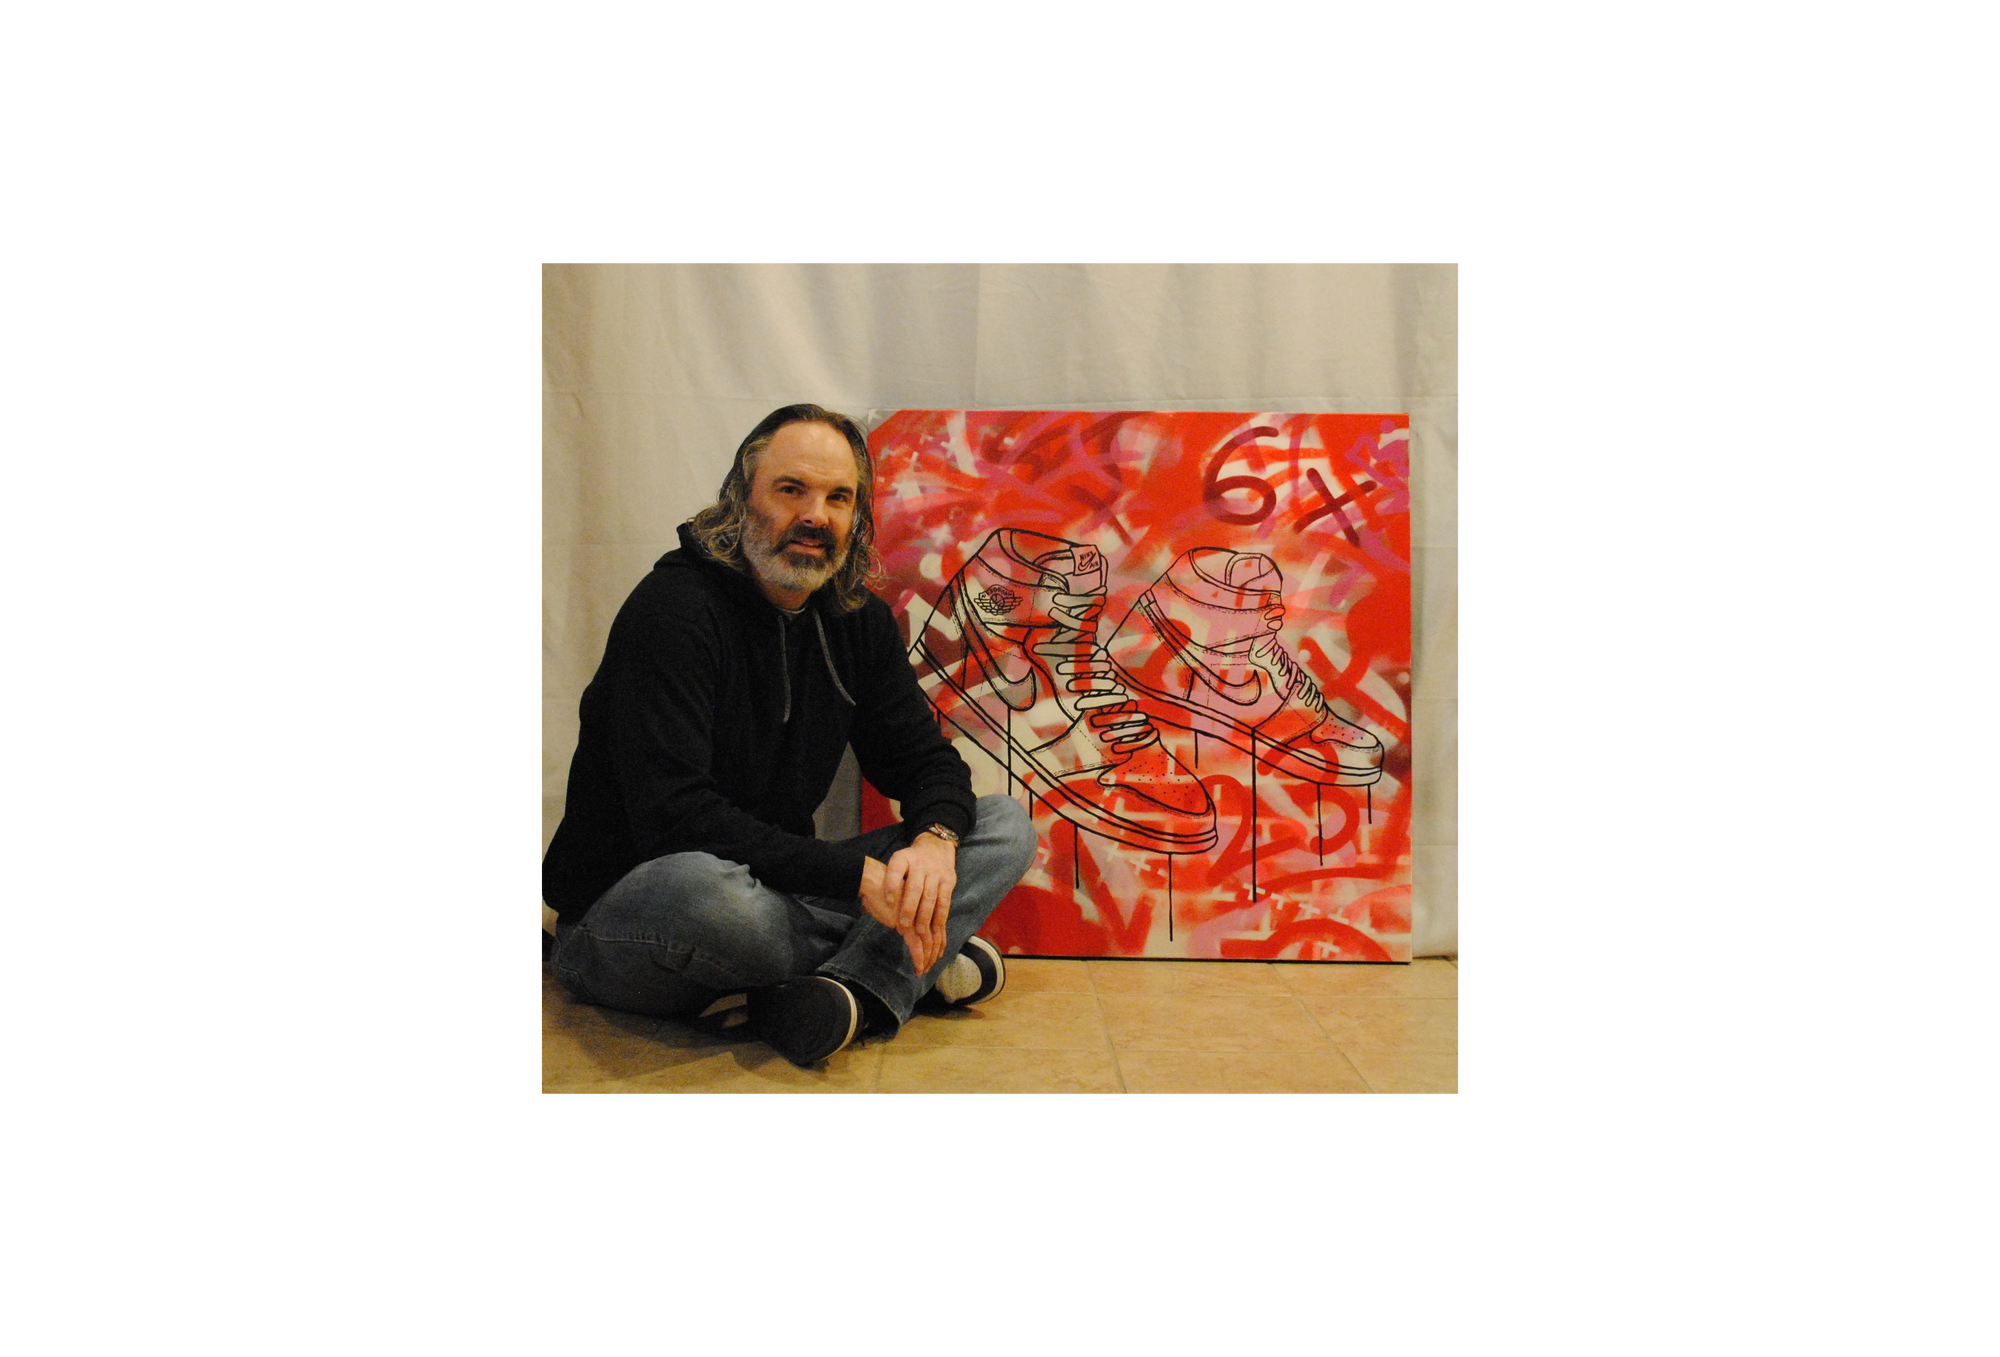 Graffiti, Pop Culture, & Provocative - David Ruggeri Fine Art